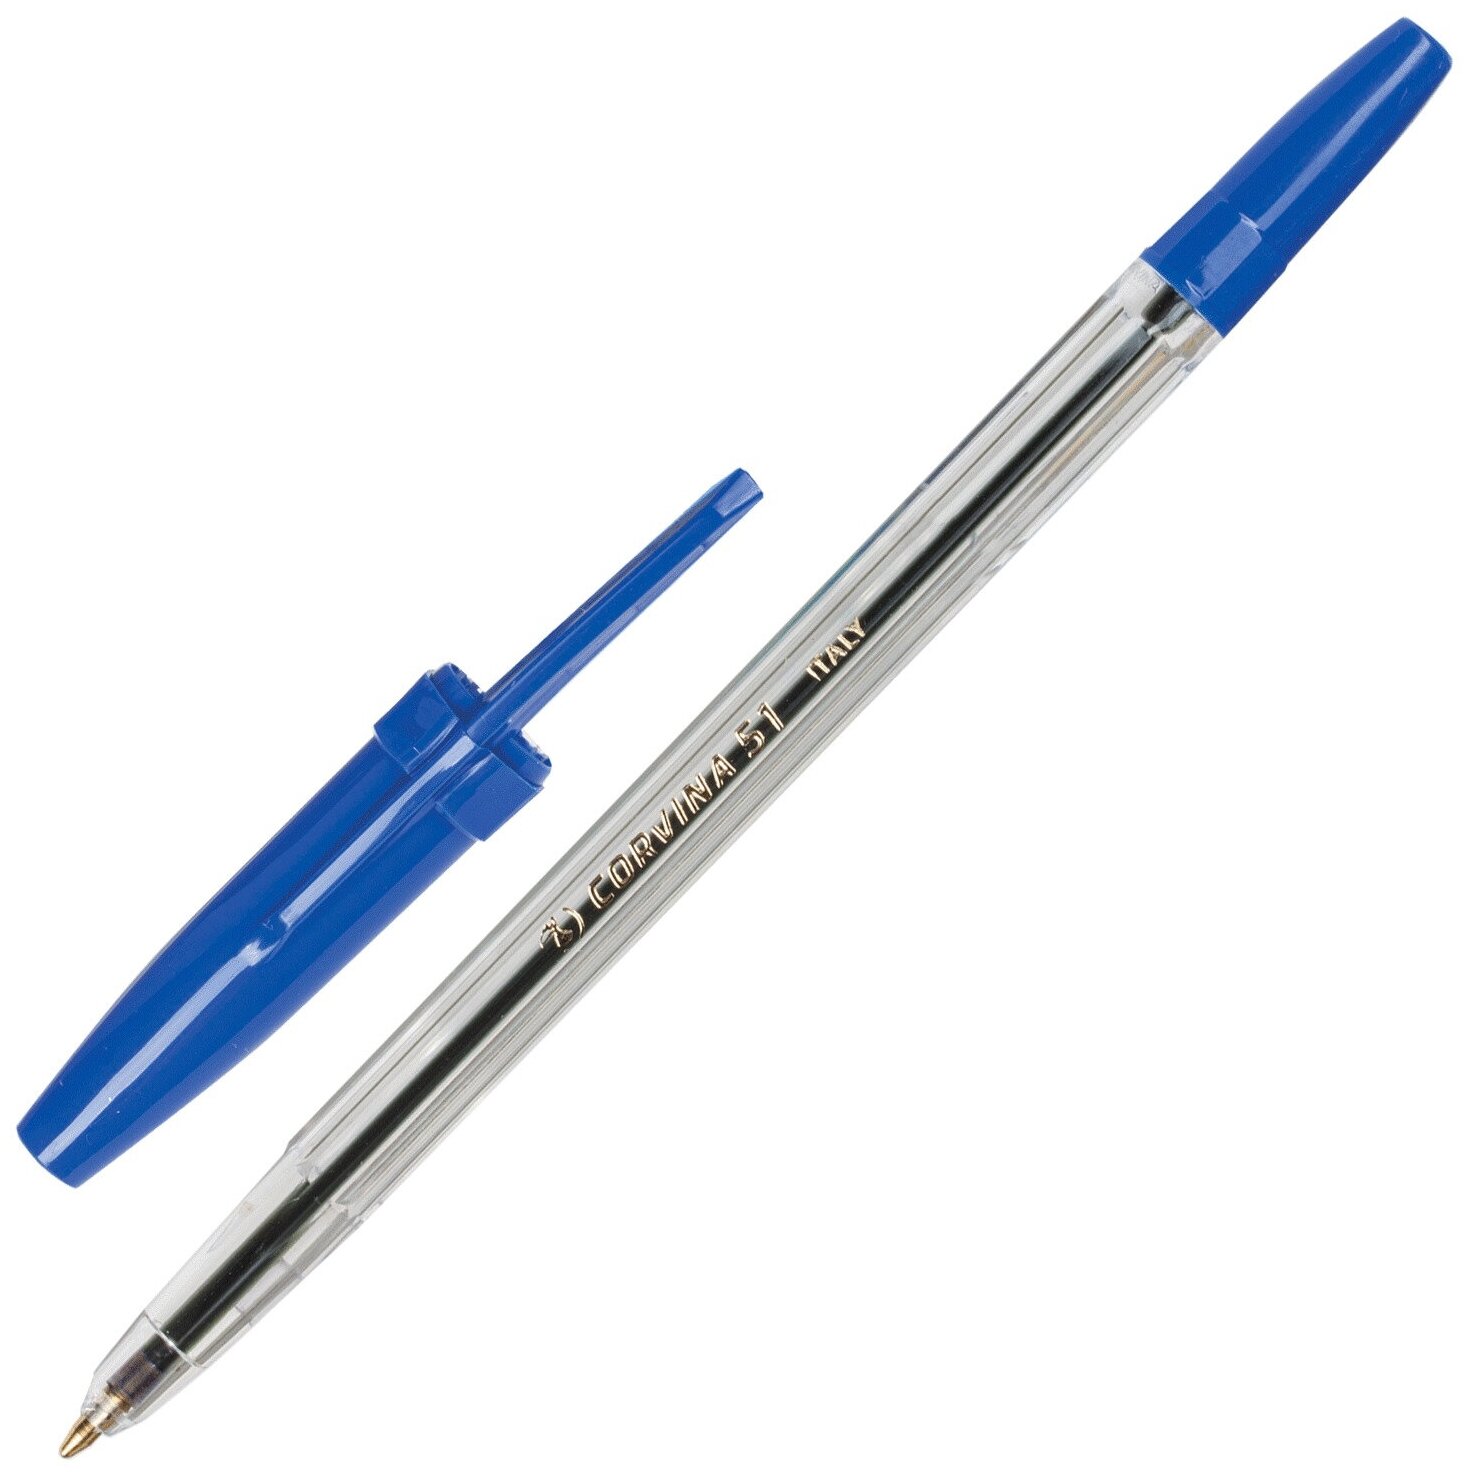 Ручка шариков. Corvina 51 Classic (40163/02) корп.прозрачный d=1мм чернила син. сменный стержень